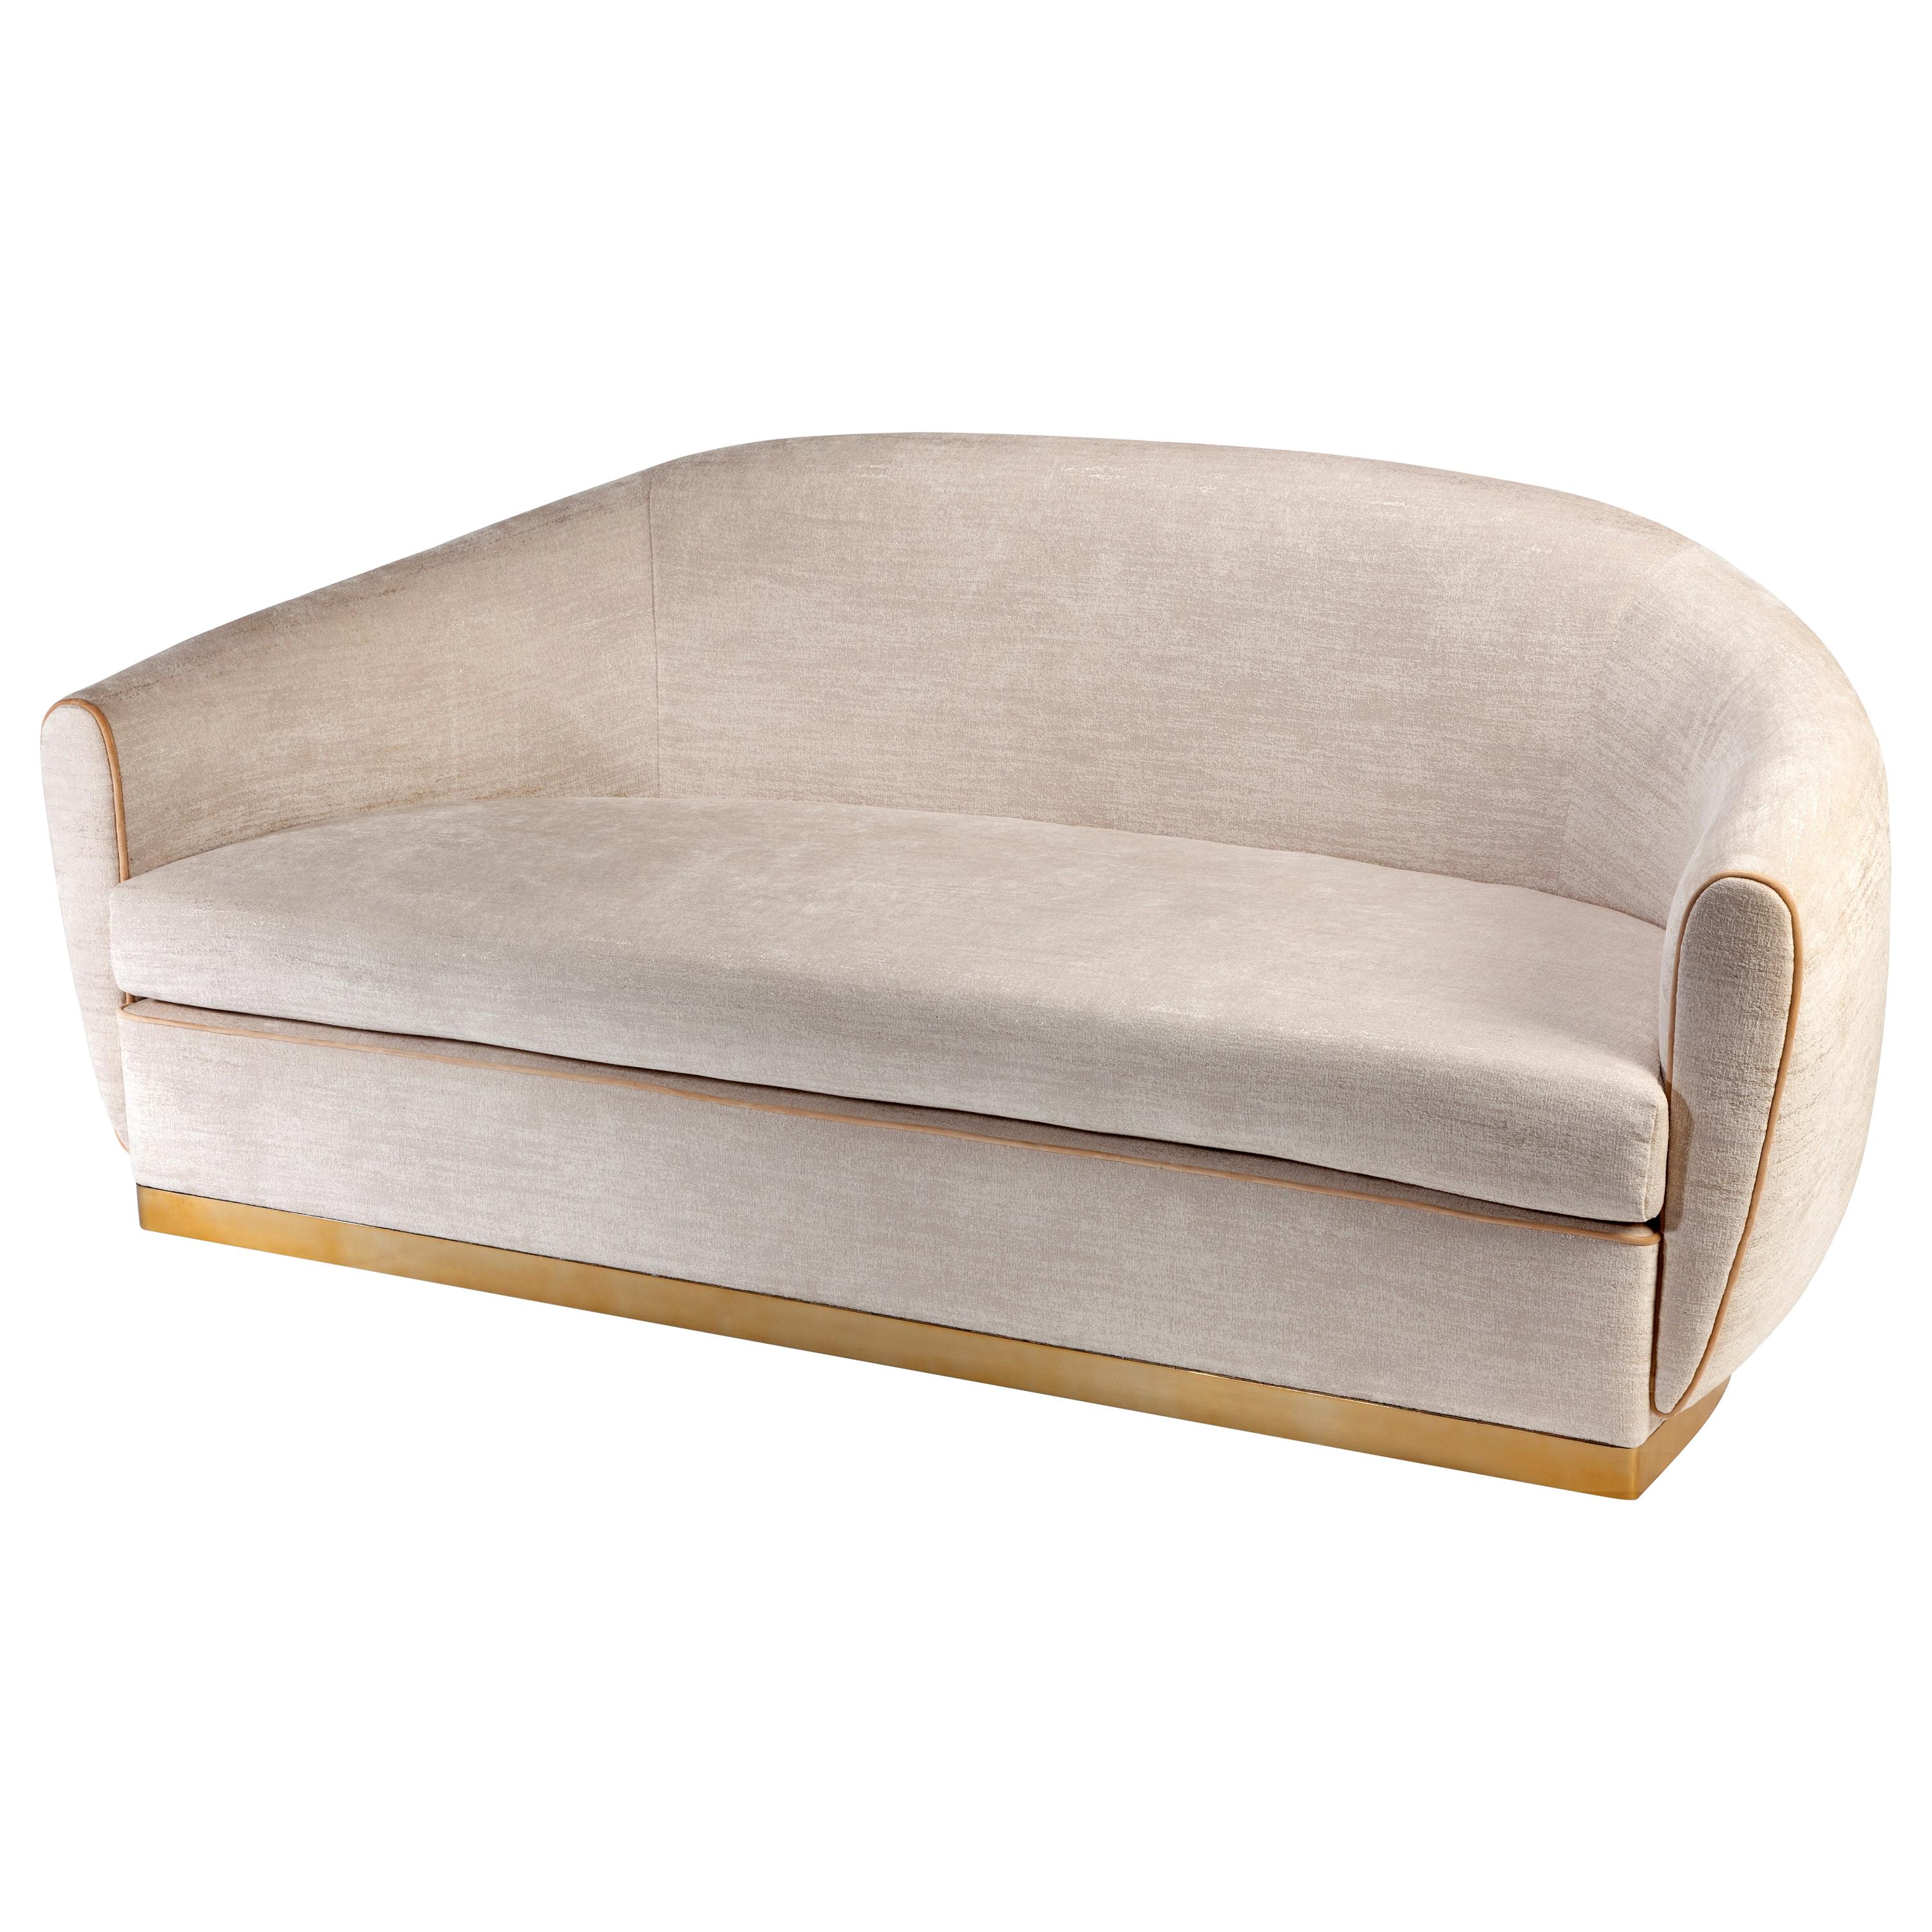 Das stilvolle und elegante Sofa Grace ist durch seine perfekte Verarbeitung äußerst bequem. Mit seinen glatten Kanten hat Grace definitiv ein vertrautes Retro-Gefühl. Eine perfekte Kombination aus hochkomfortabler und perfekt zugeschnittener